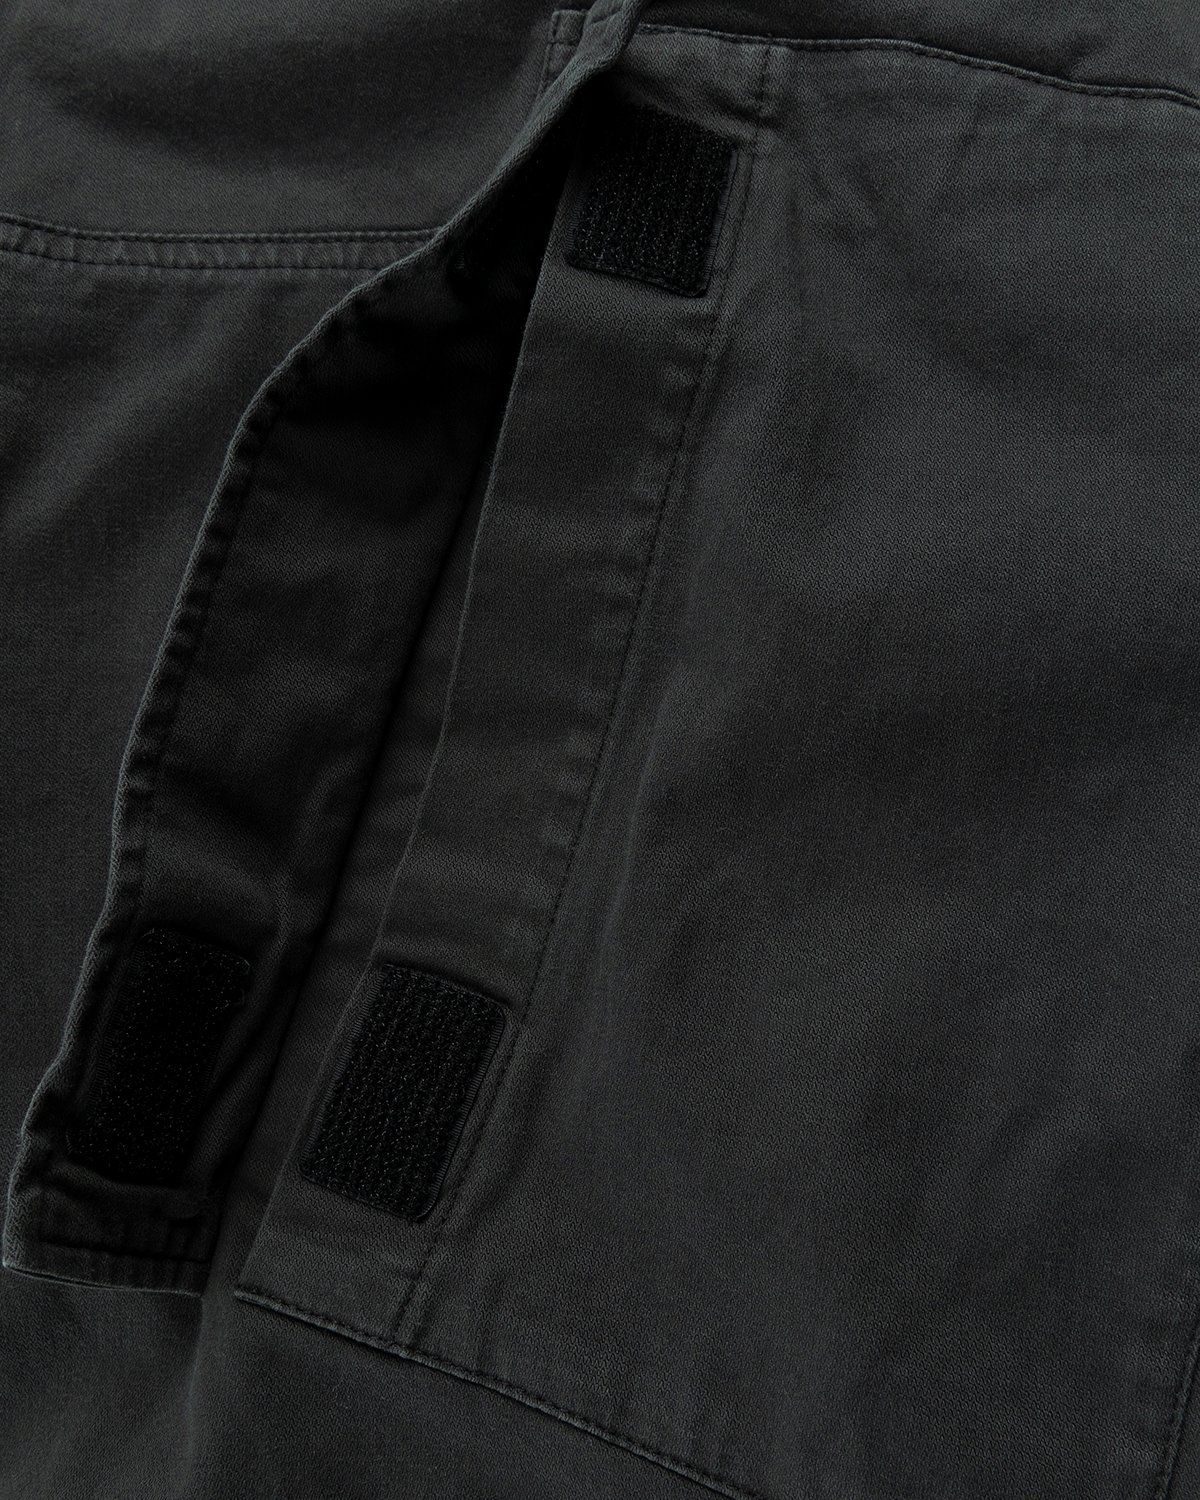 Acne Studios – Chevron Cargo Pants Anthracite Grey - Cargo Pants - Grey - Image 5